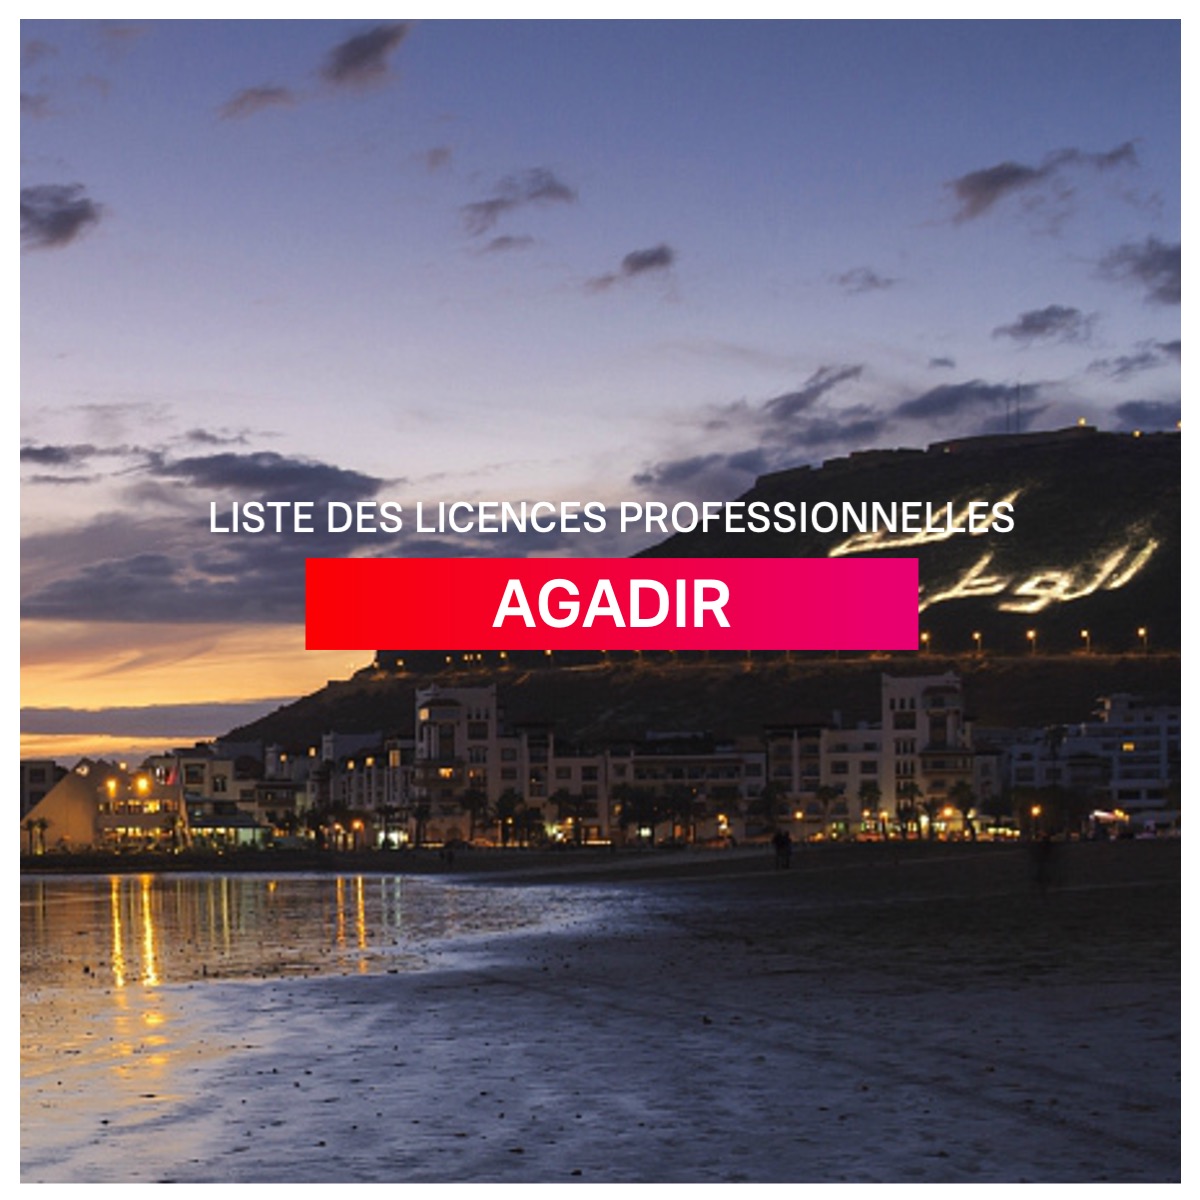 Liste des licences professionnelles Agadir